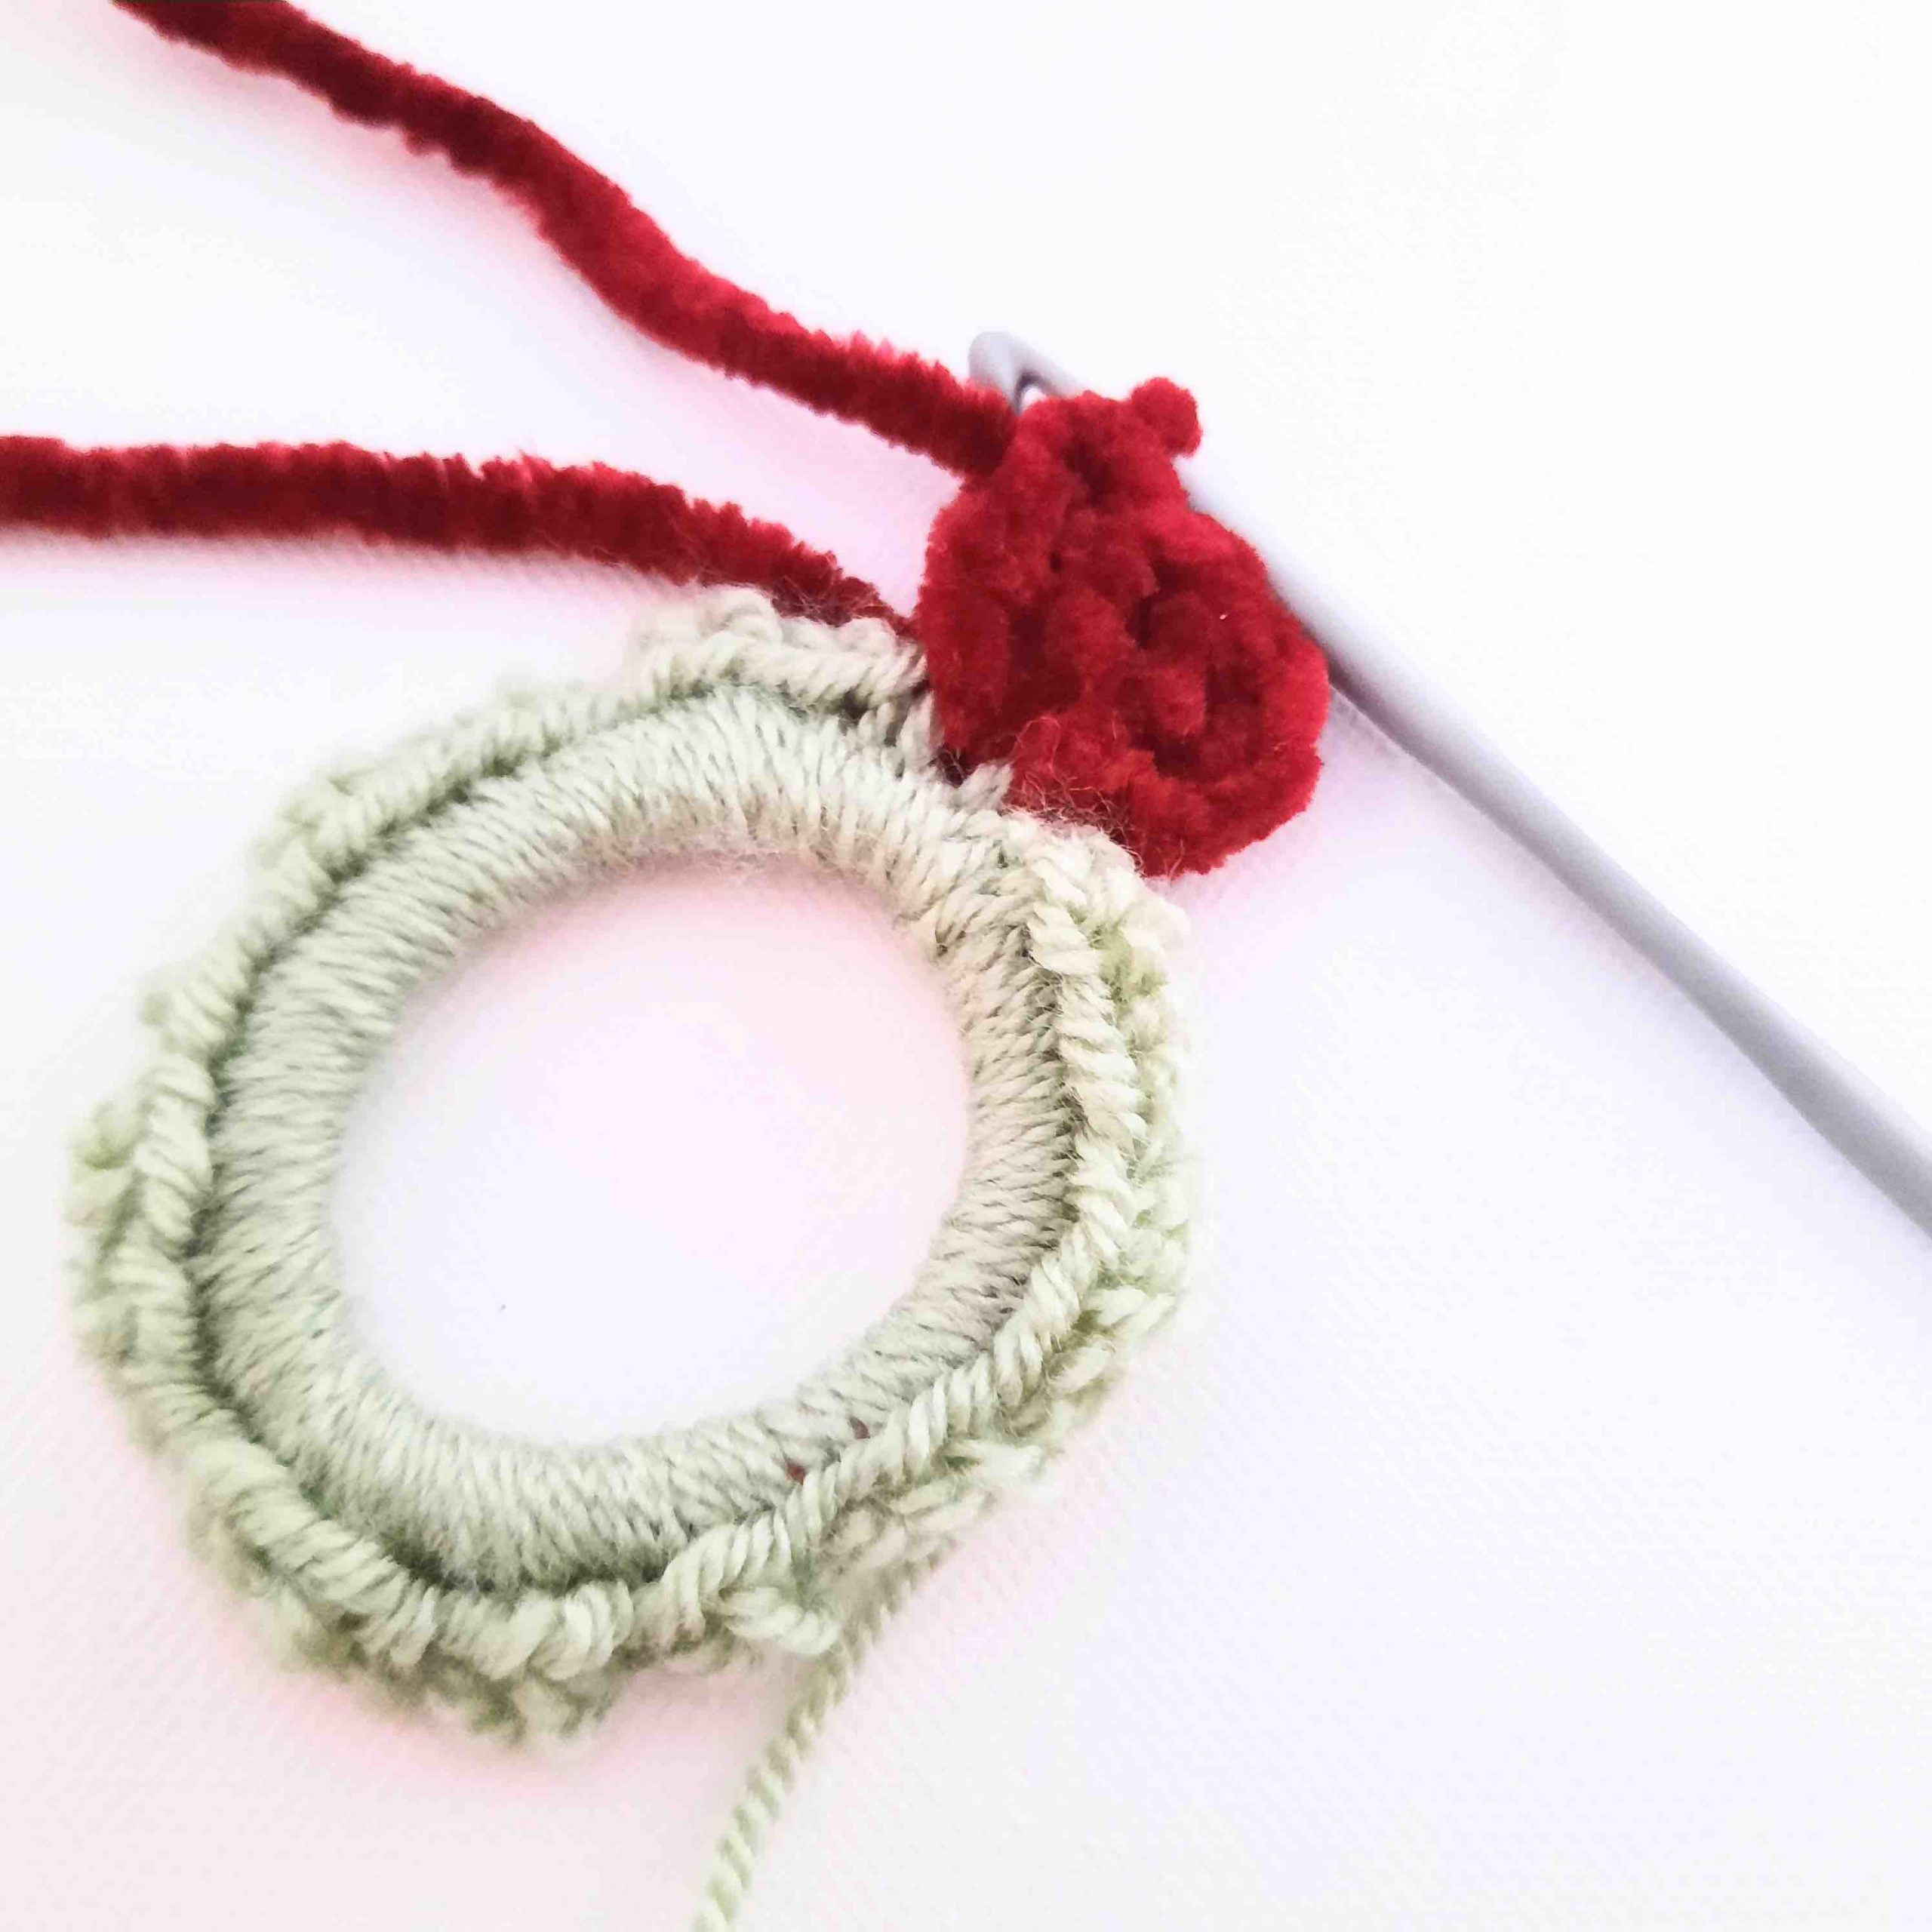 velvet scrunchie crochet pattern photo tutorial